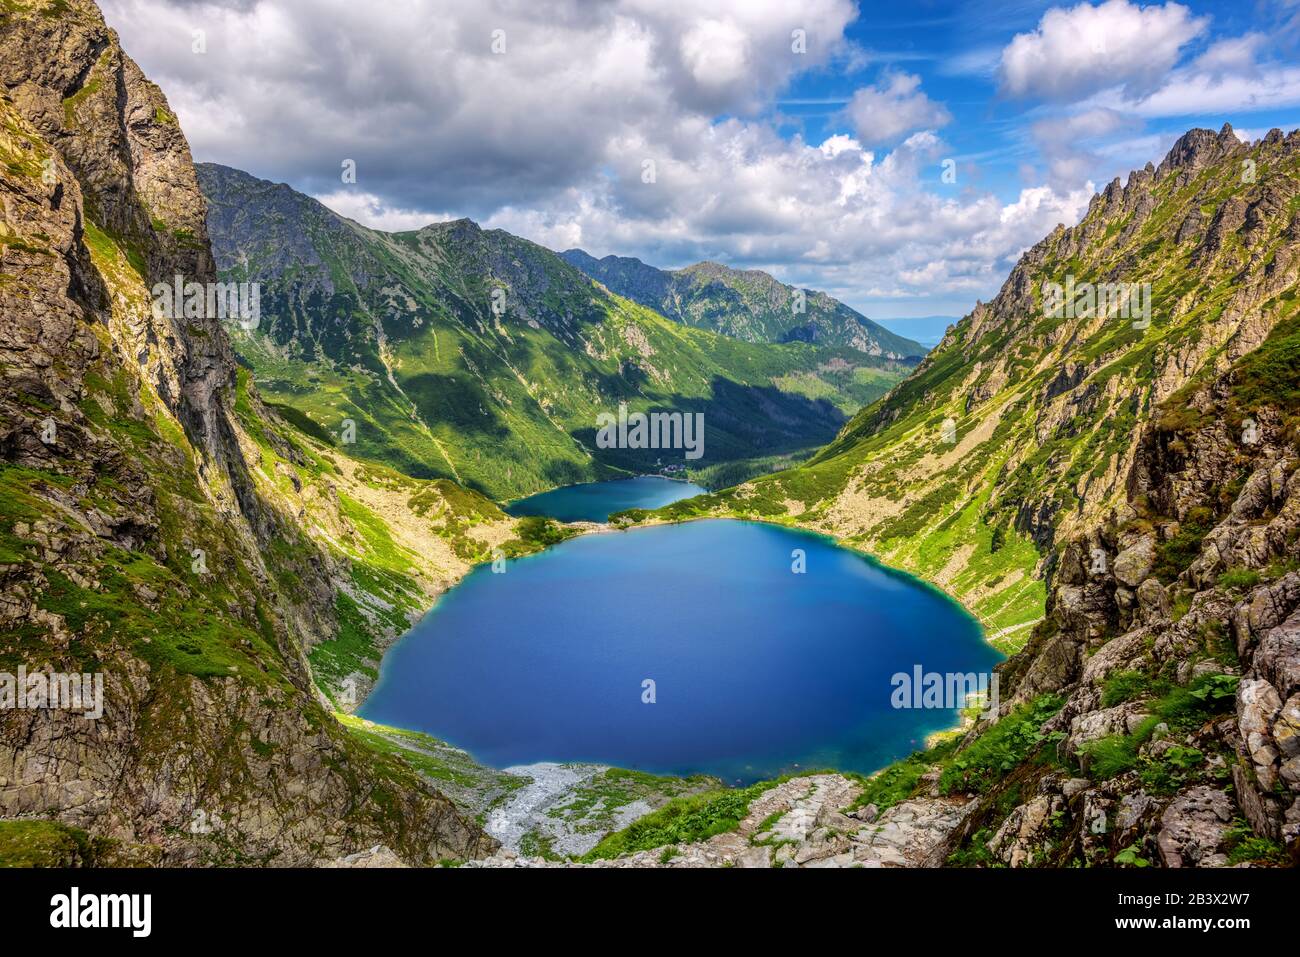 Le lac Blake et le lac Morskie Oko, ou Eye of the Sea, dans une vallée des montagnes polonaises Tatra, sont une destination touristique populaire à Zakopane, en Pologne Banque D'Images